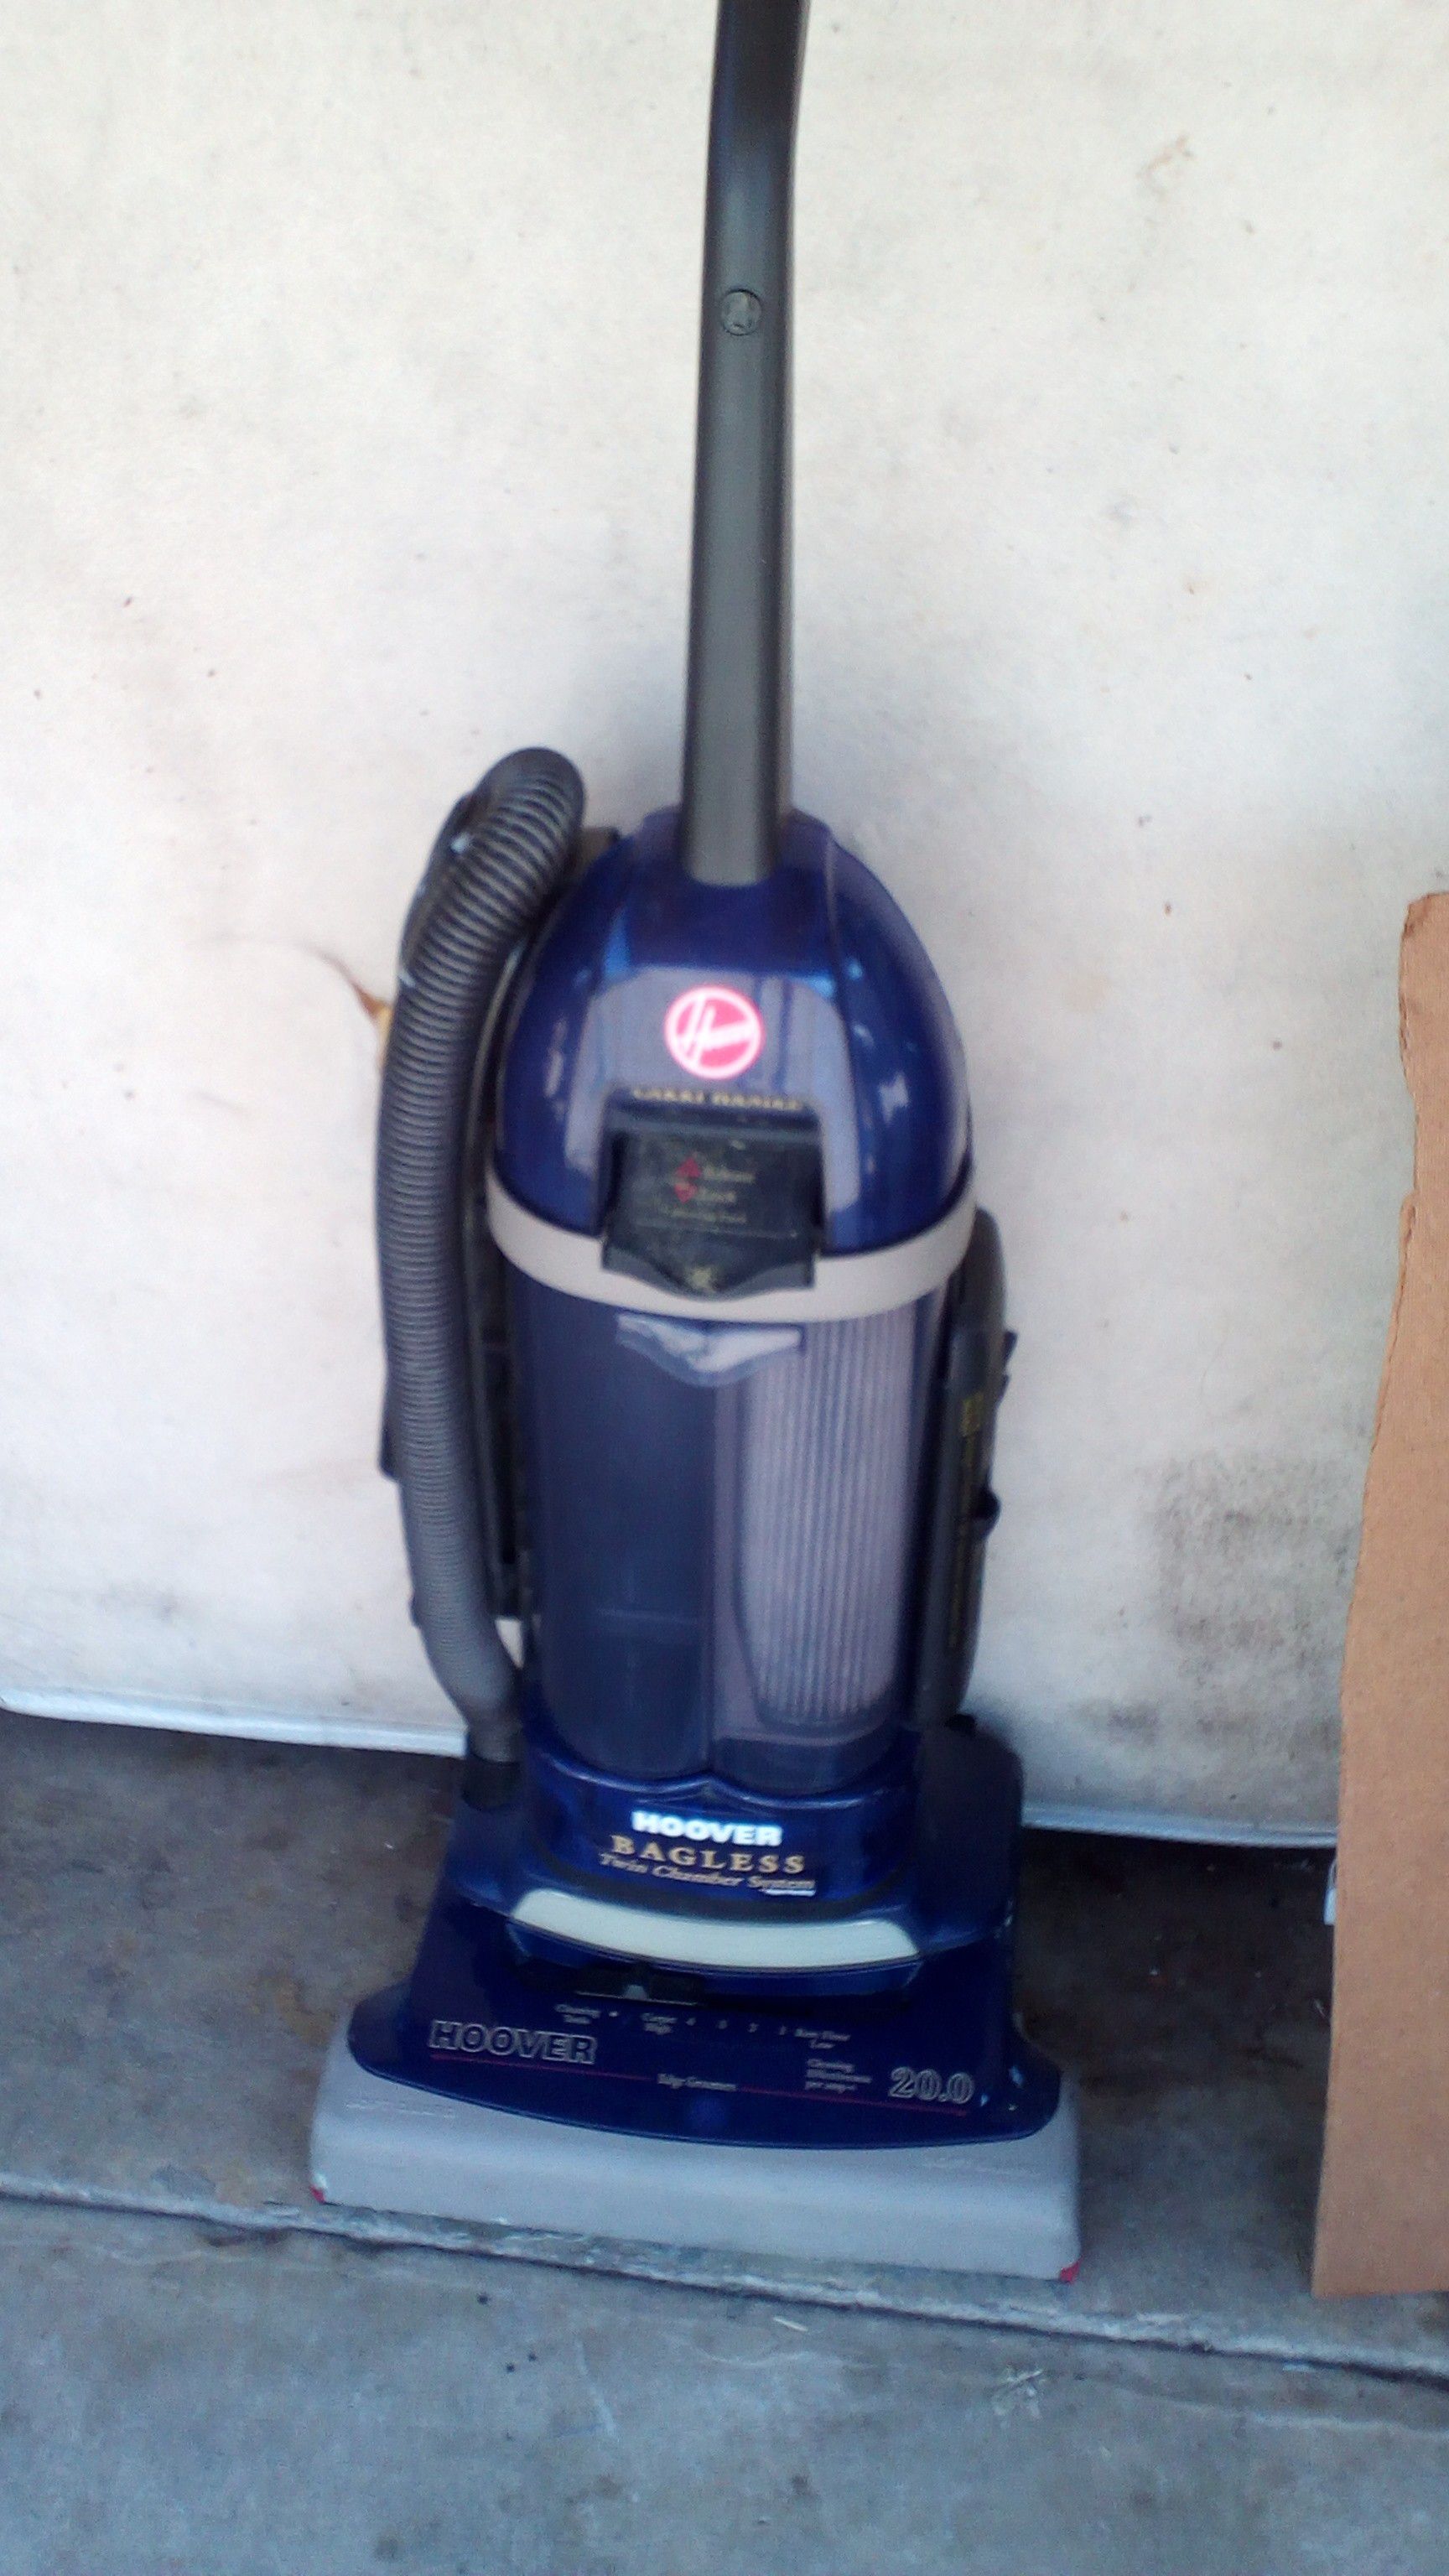 Hoover bagless vacuum